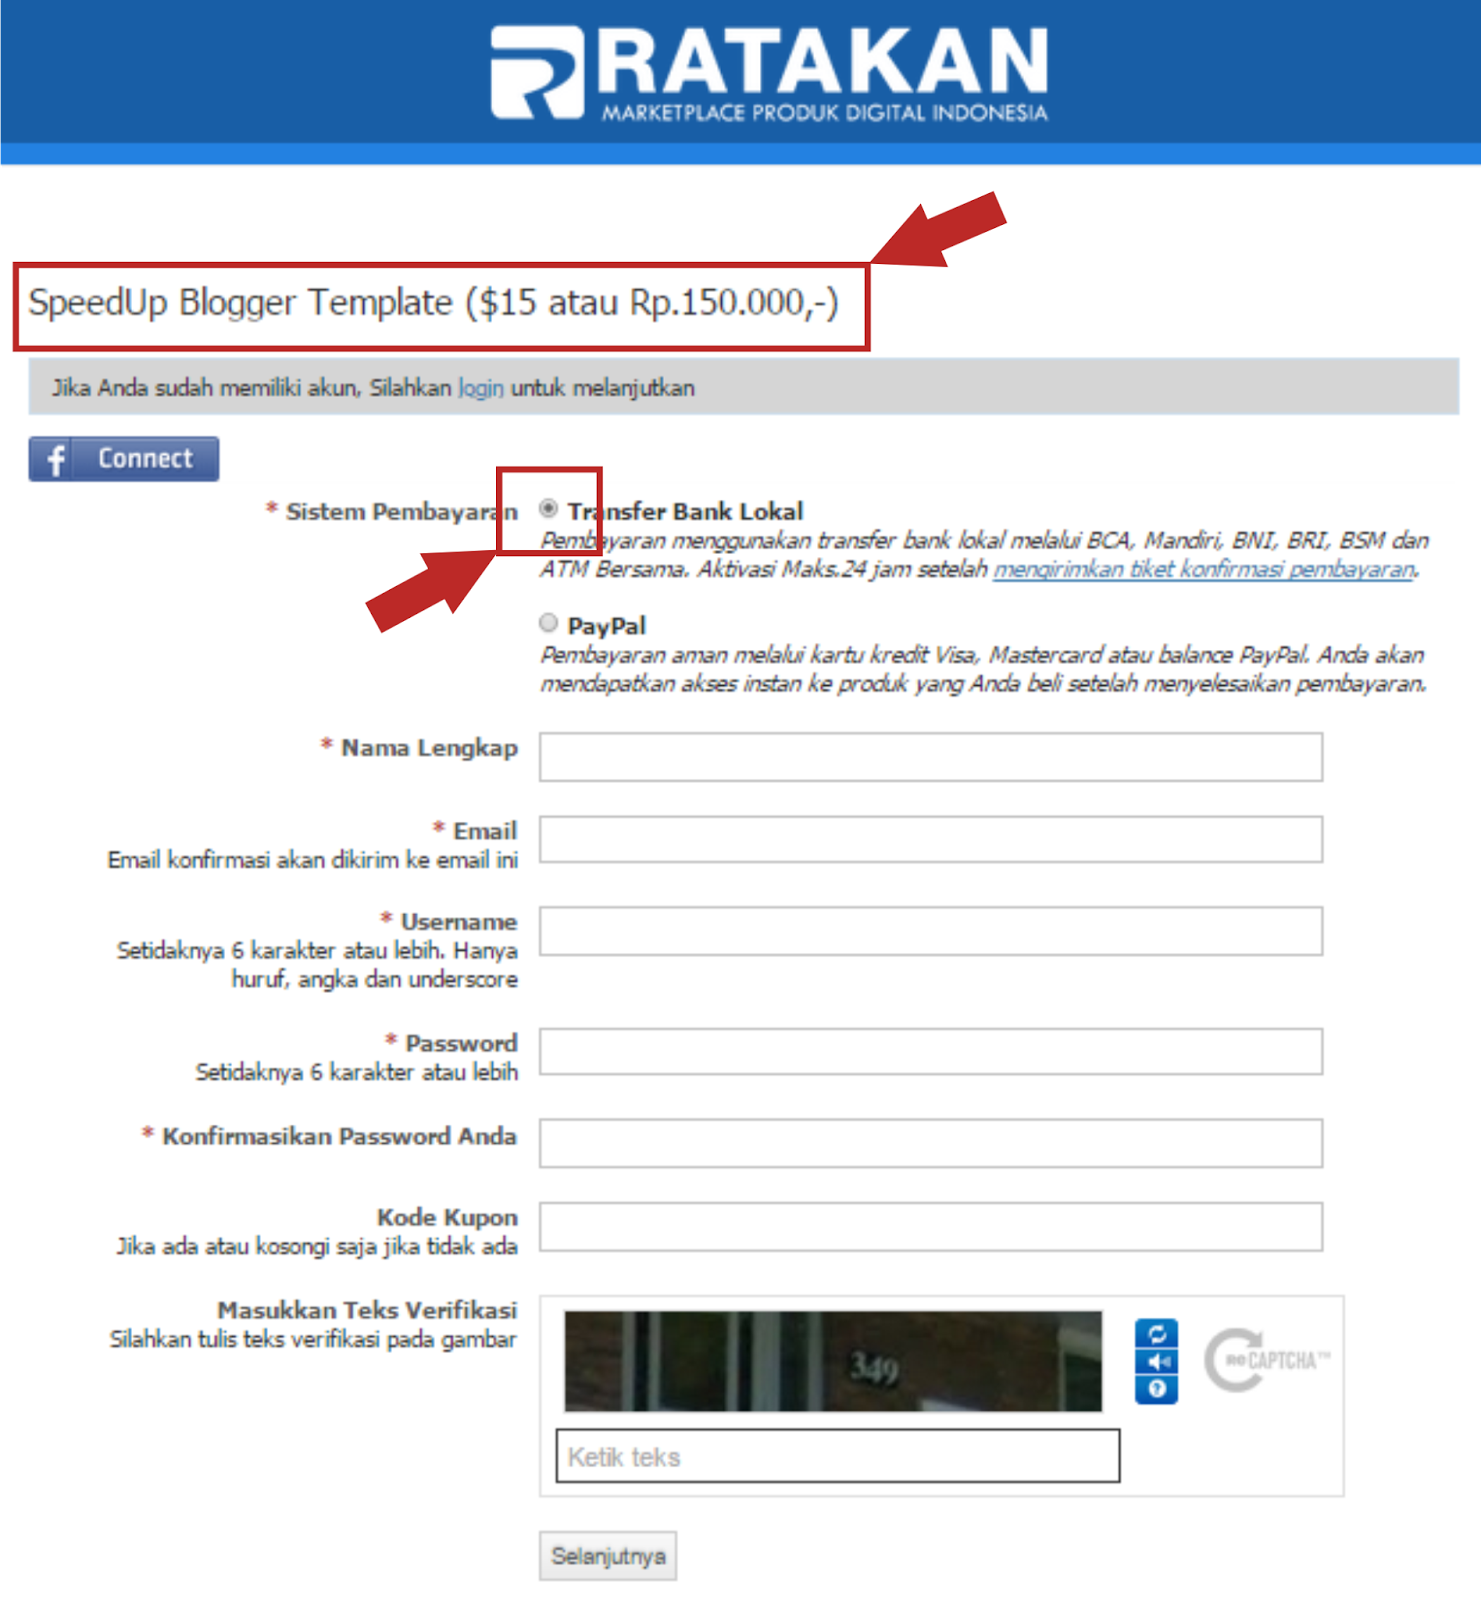 Pengalaman transaksi di ratakan.com, step by step transfer via bank lokal